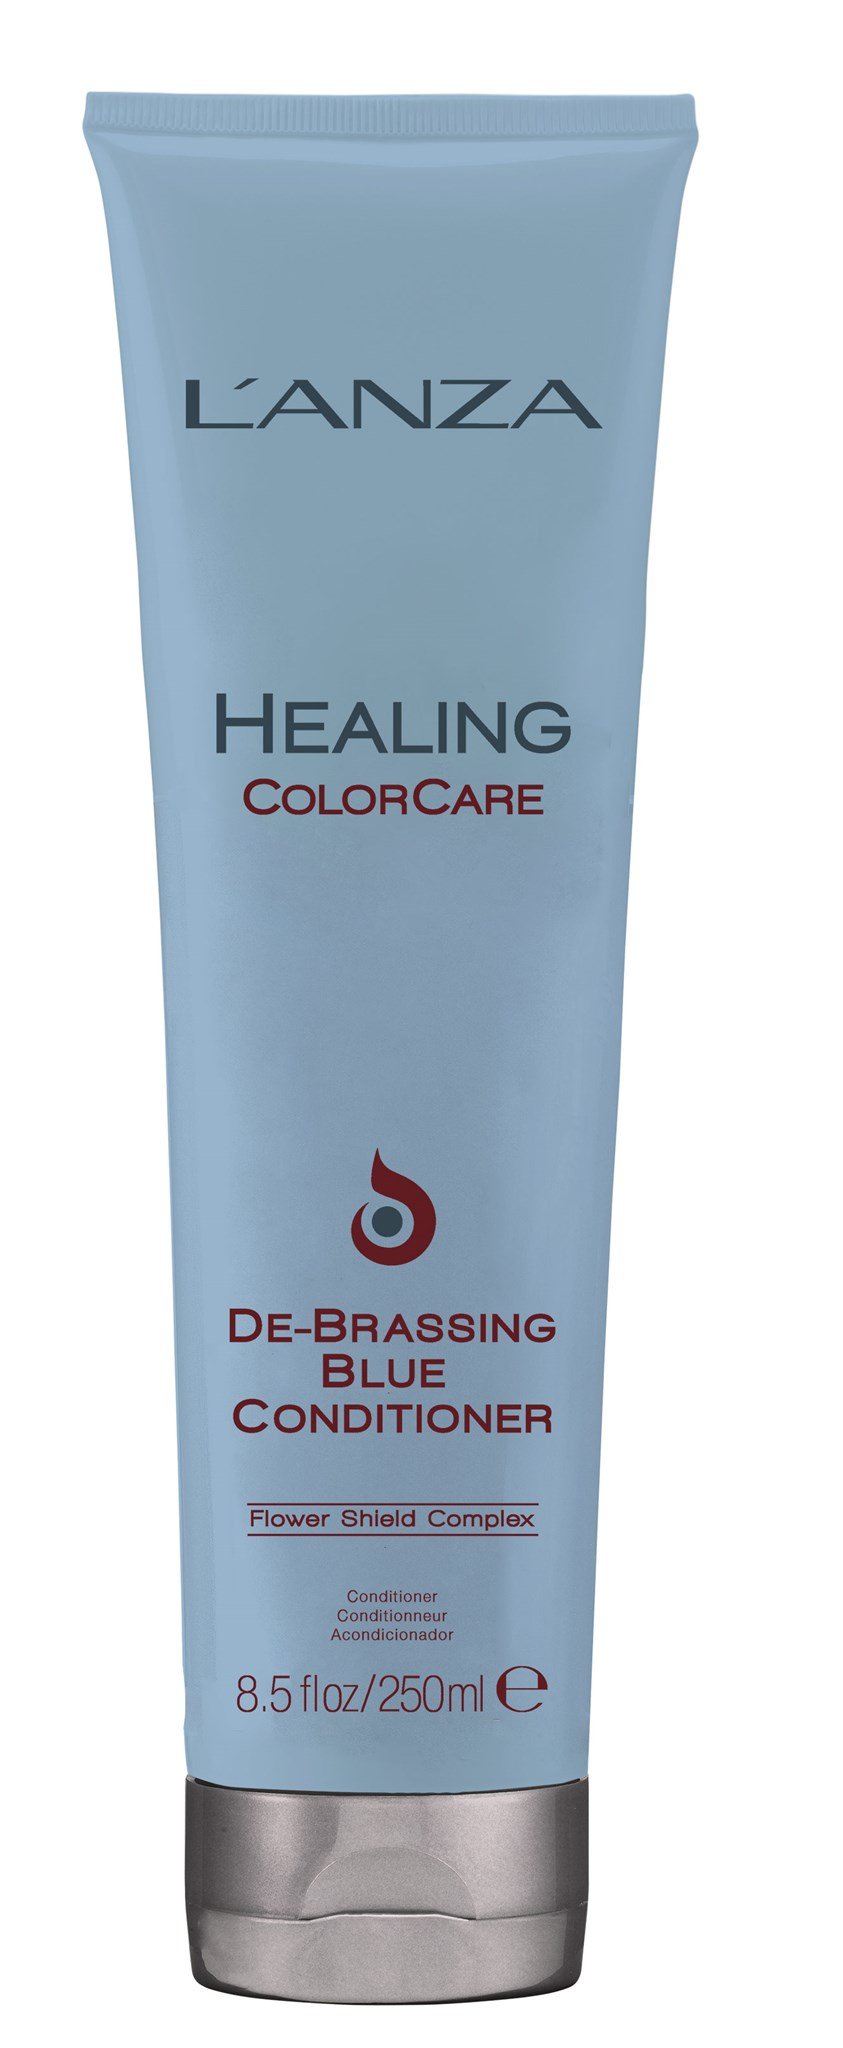 Lanza Healing ColorCare Acondicionador De-Brassing Azul 250ml